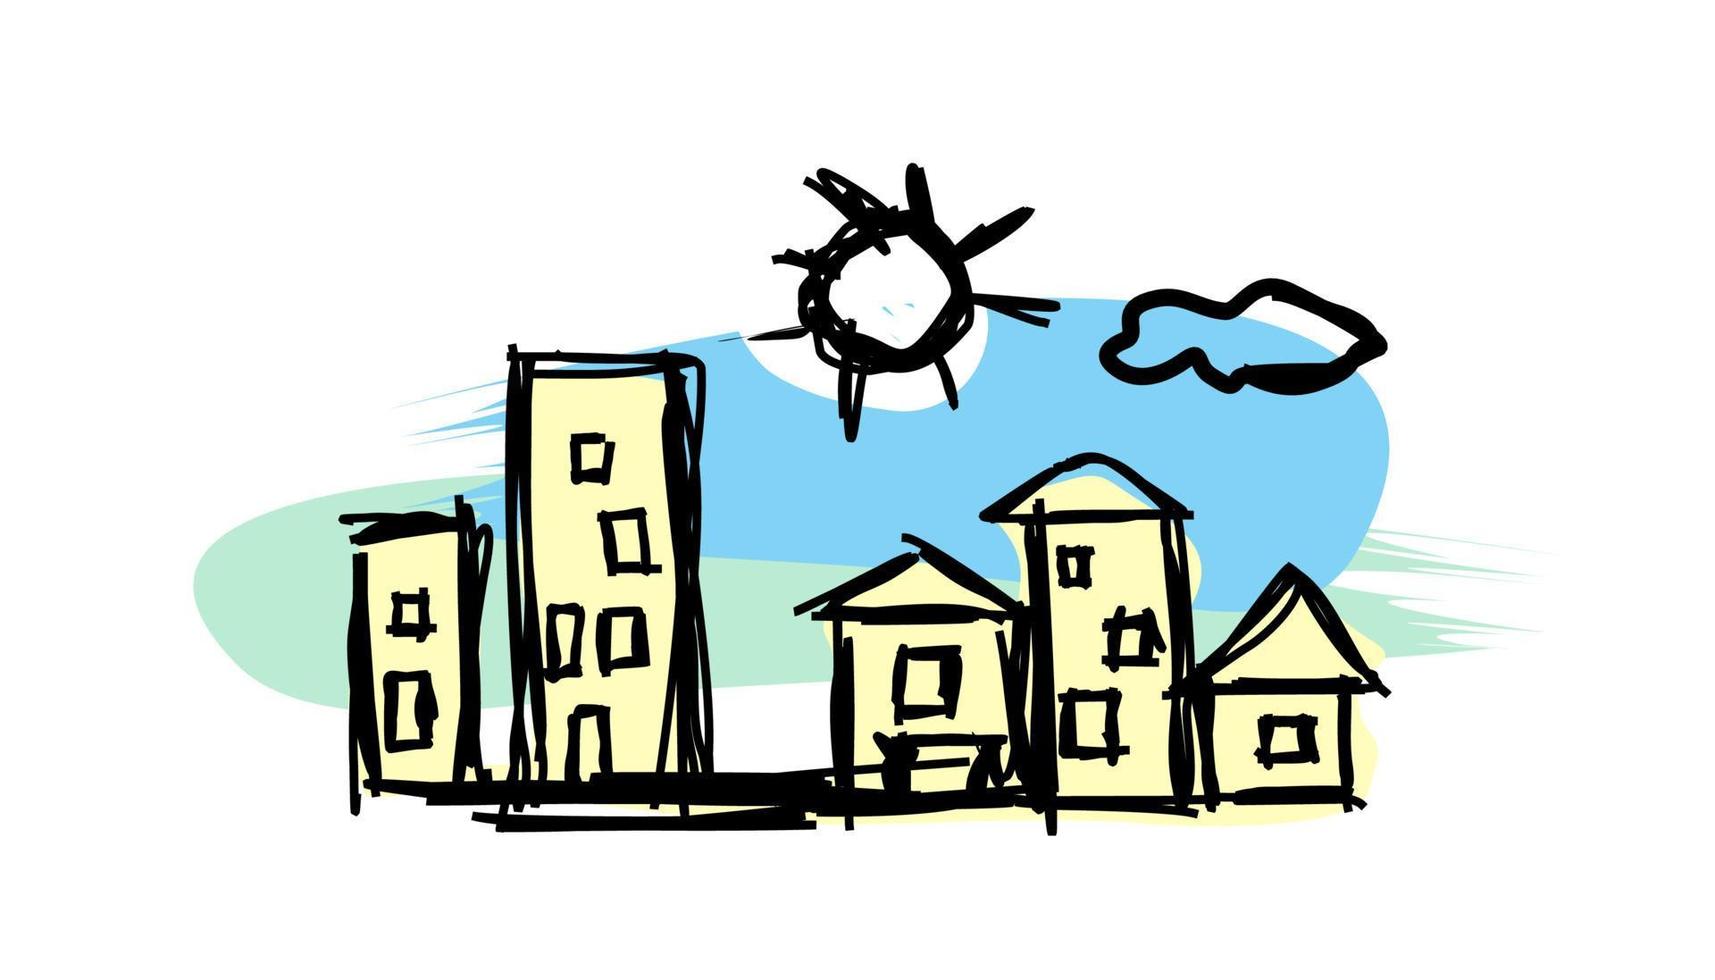 hem ritmarkör. stad - hand ritning barn. stadsbild urban - barnkonst. hus, sol och himmel - vektorclipart. fred vektor